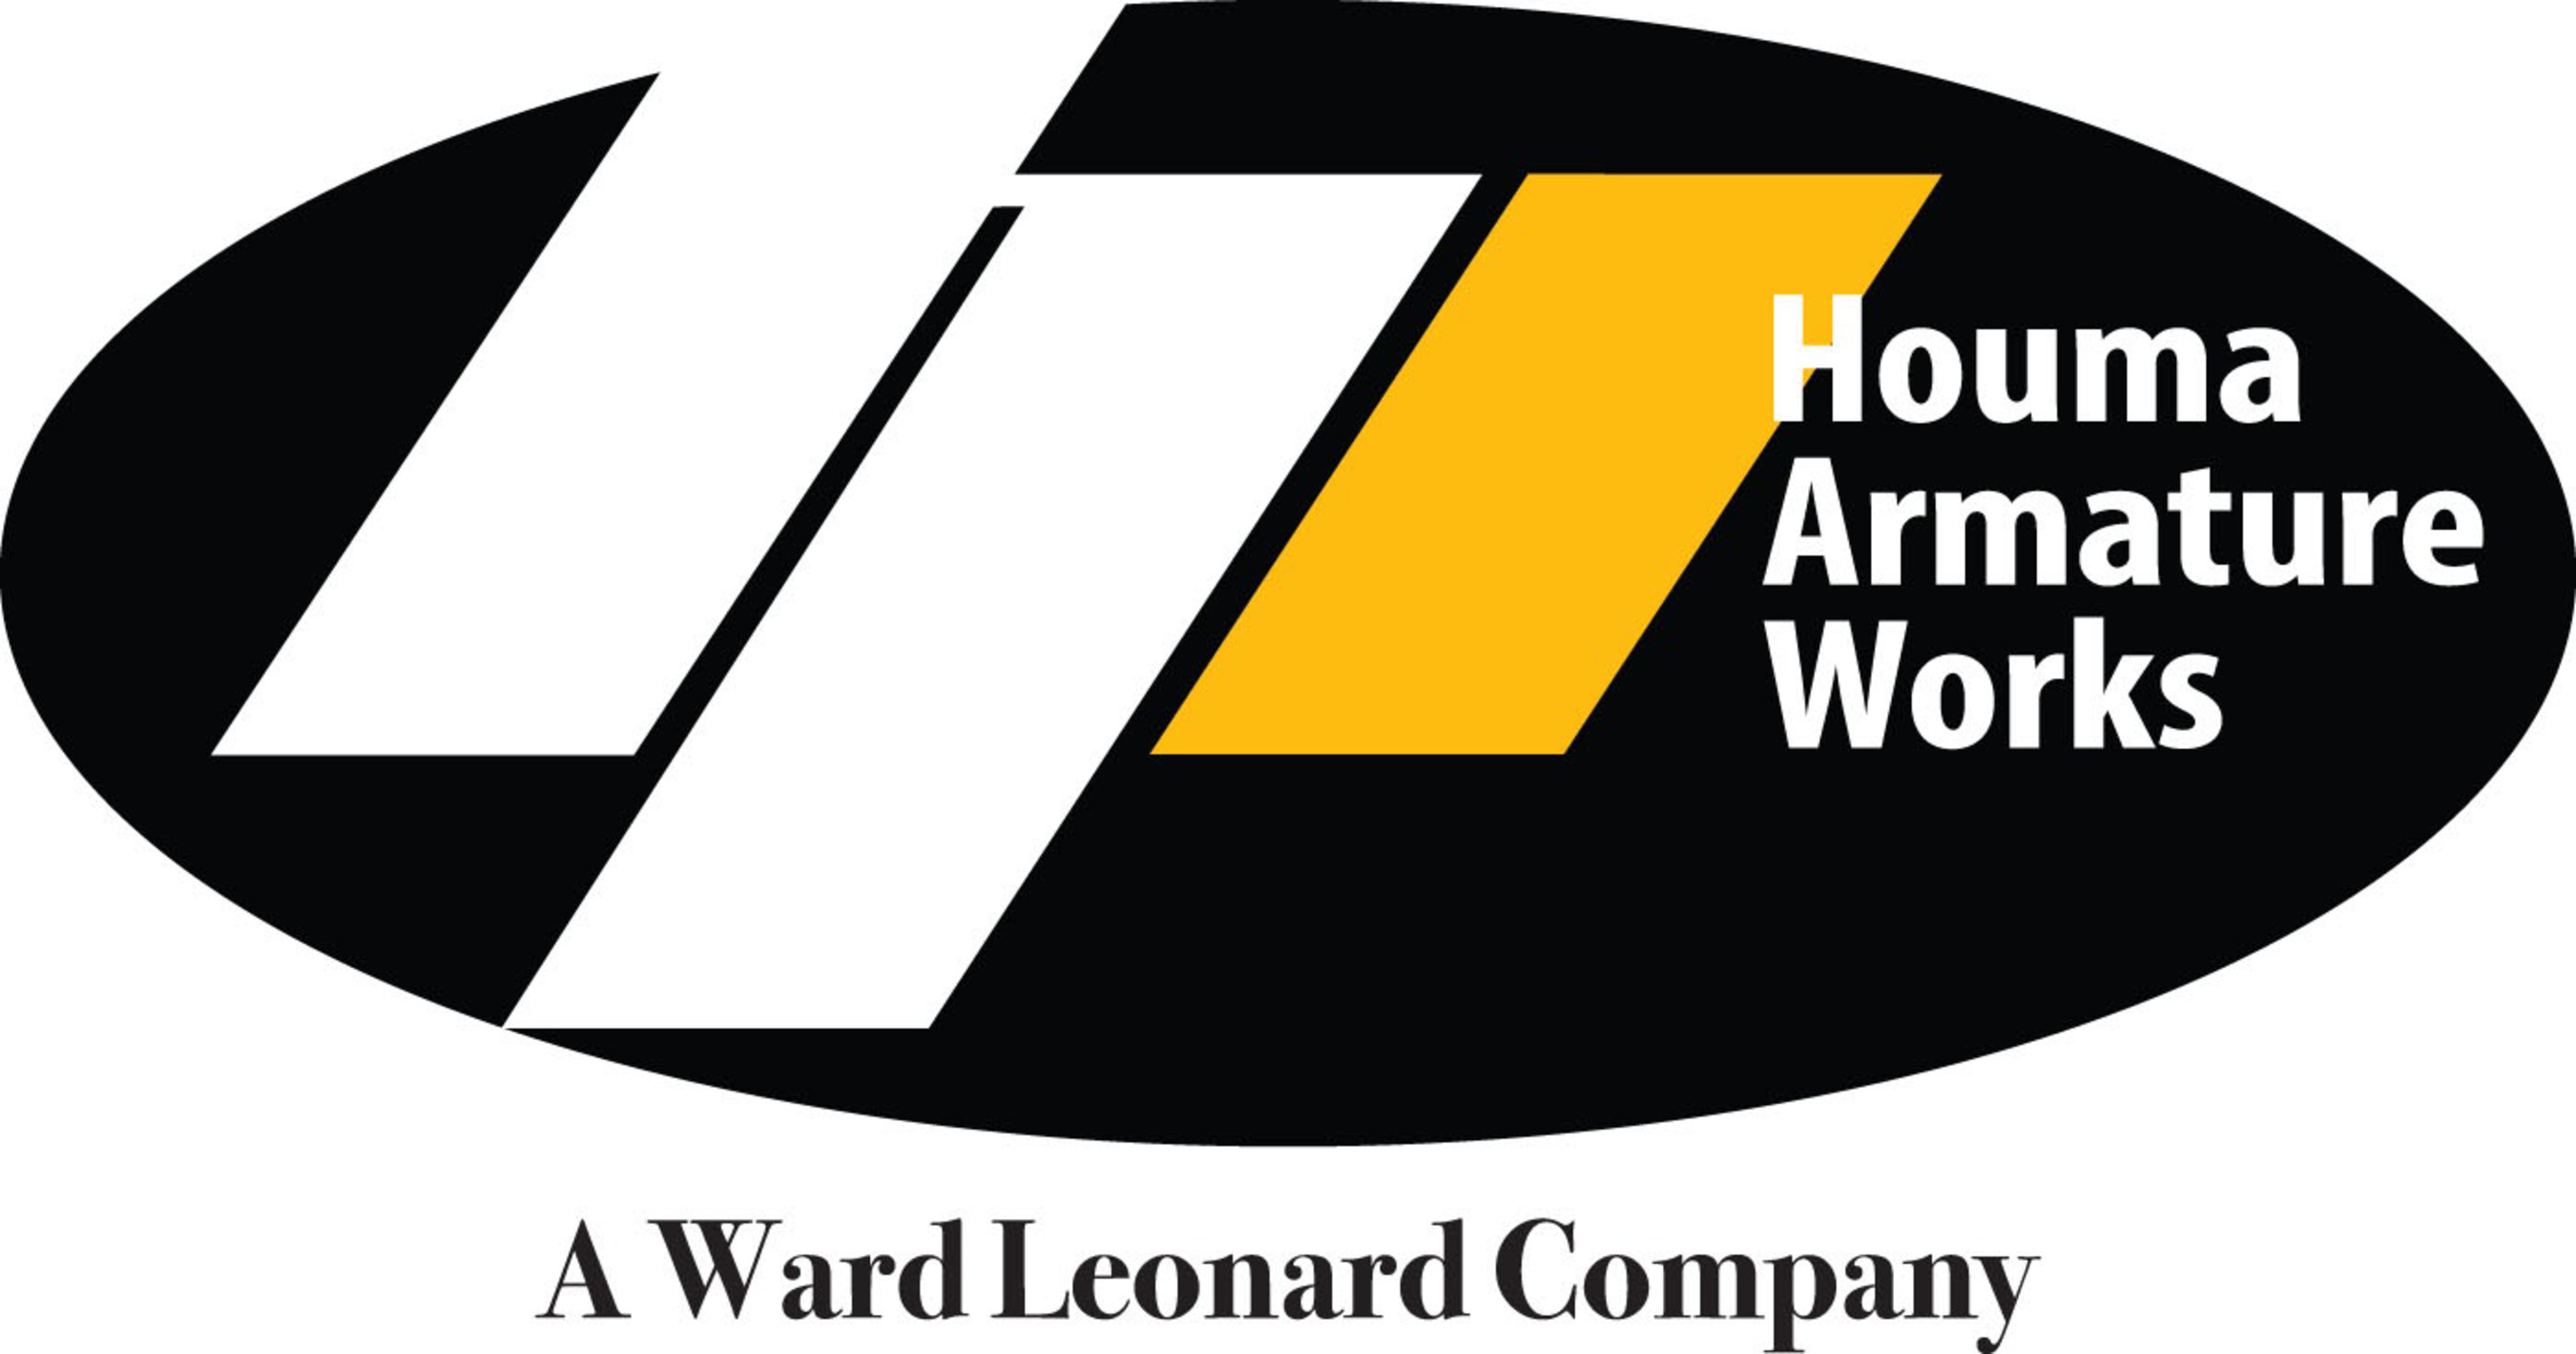 Houma Armature Works - A Ward Leonard Company - Logo